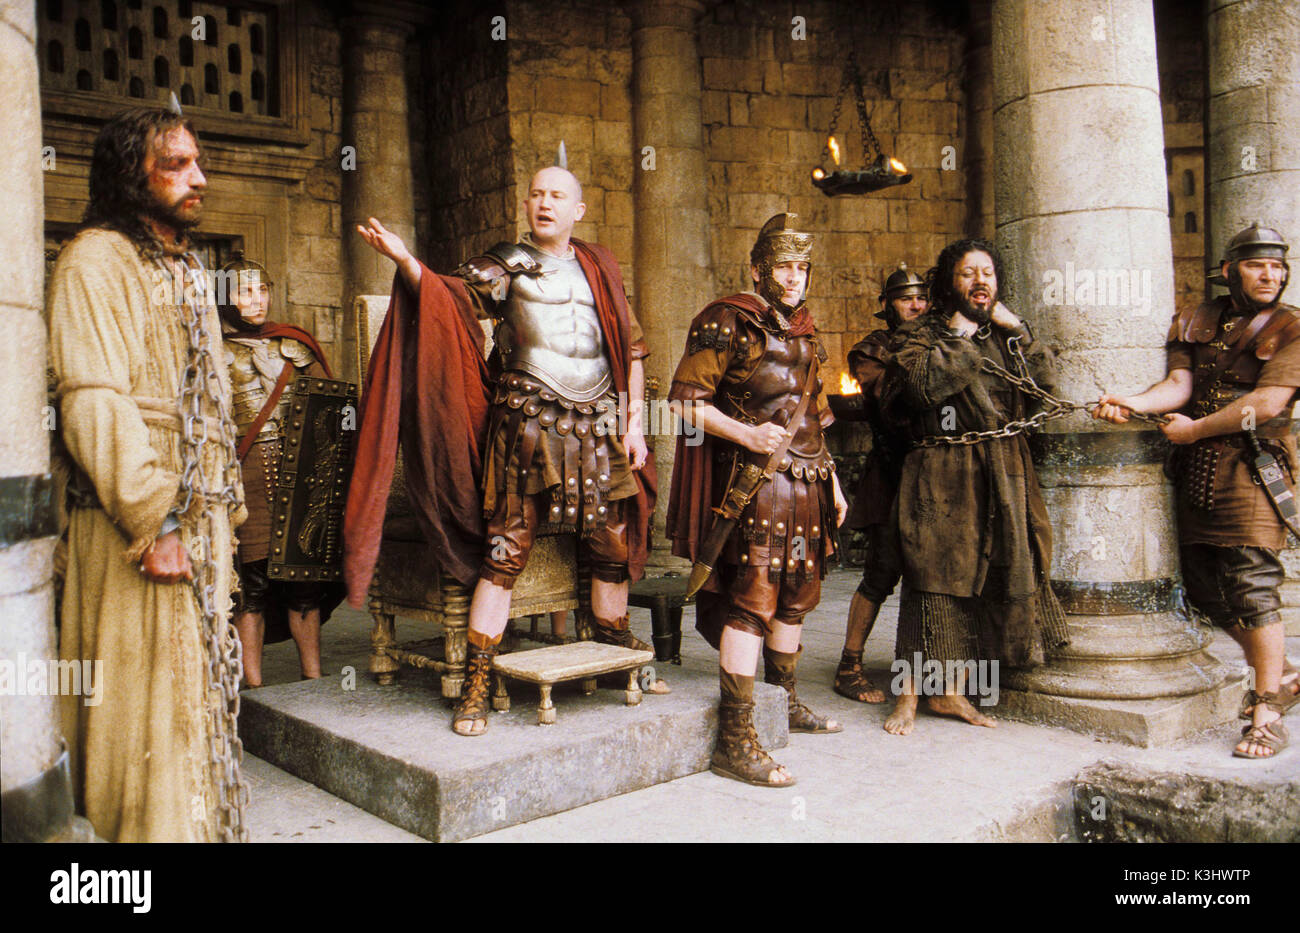 THE PASSION OF CHRIST JIM CAVIEZEL as Jesus, HRISTO SHOPOV as Pontius Pilate, PIETRO SARUBBI as Barabbas     Date: 2004 Stock Photo